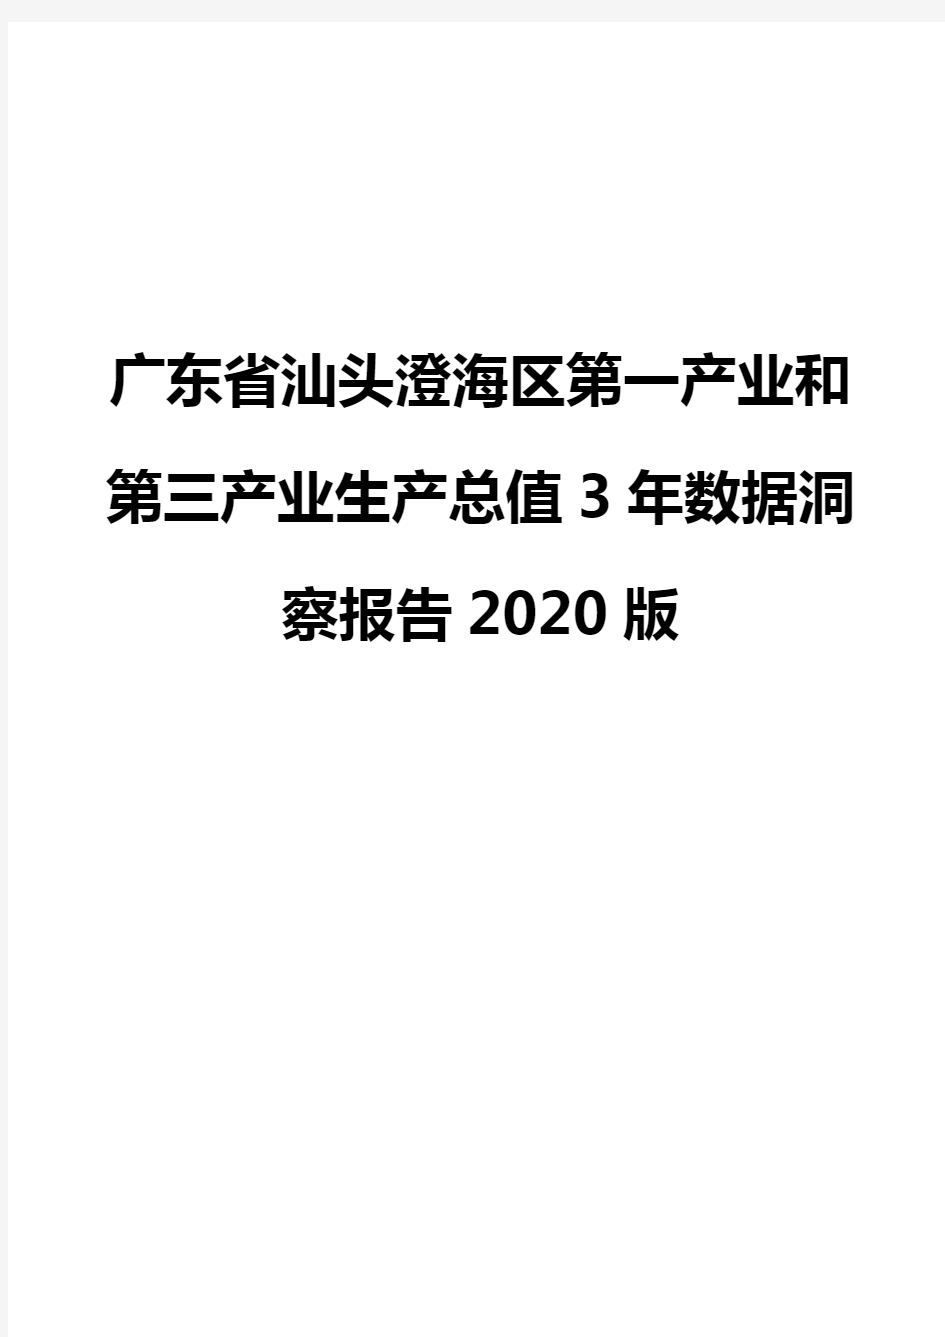 广东省汕头澄海区第一产业和第三产业生产总值3年数据洞察报告2020版